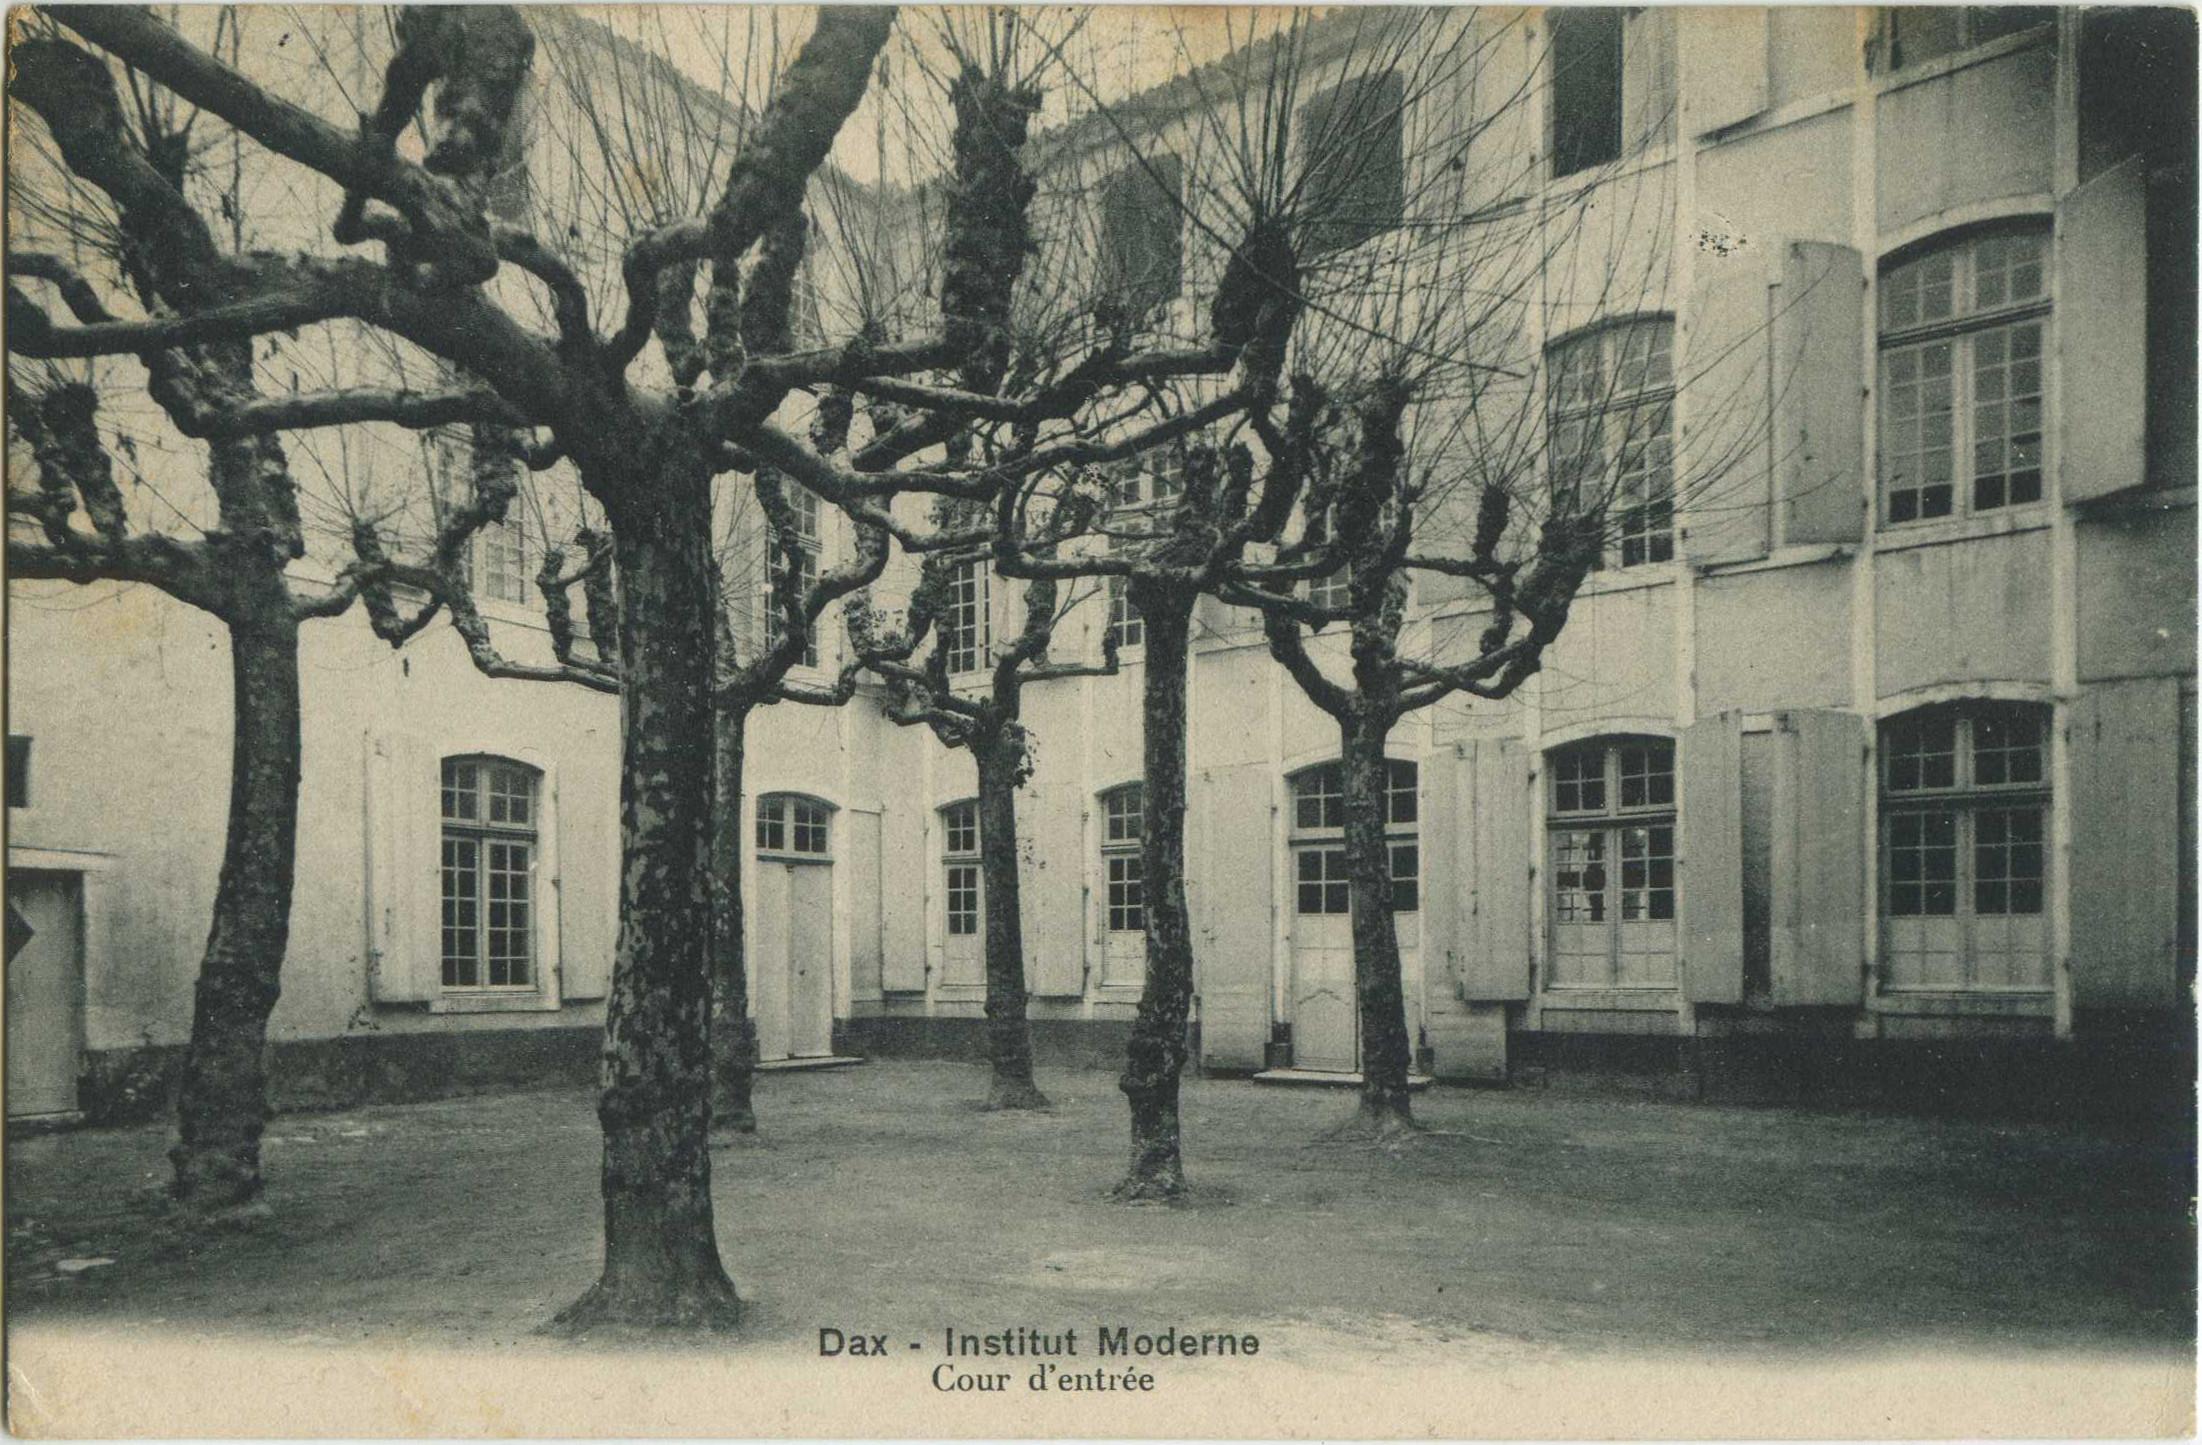 Dax - Institut Moderne - Cour d'entrée